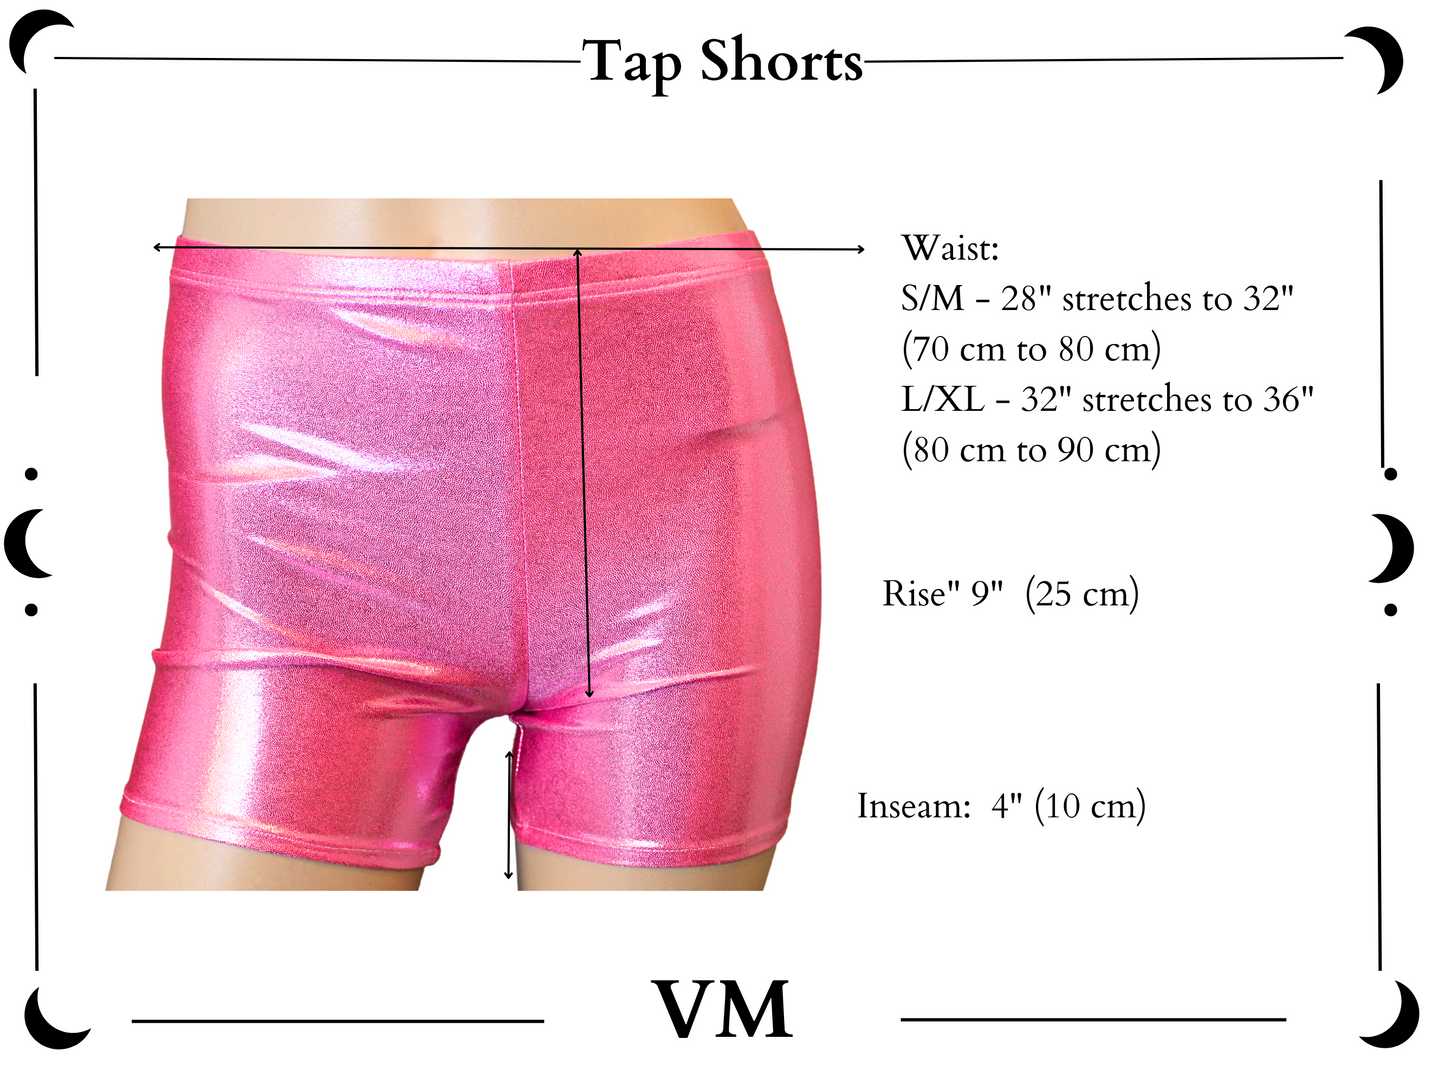 The VM Velvet Tap Shorts